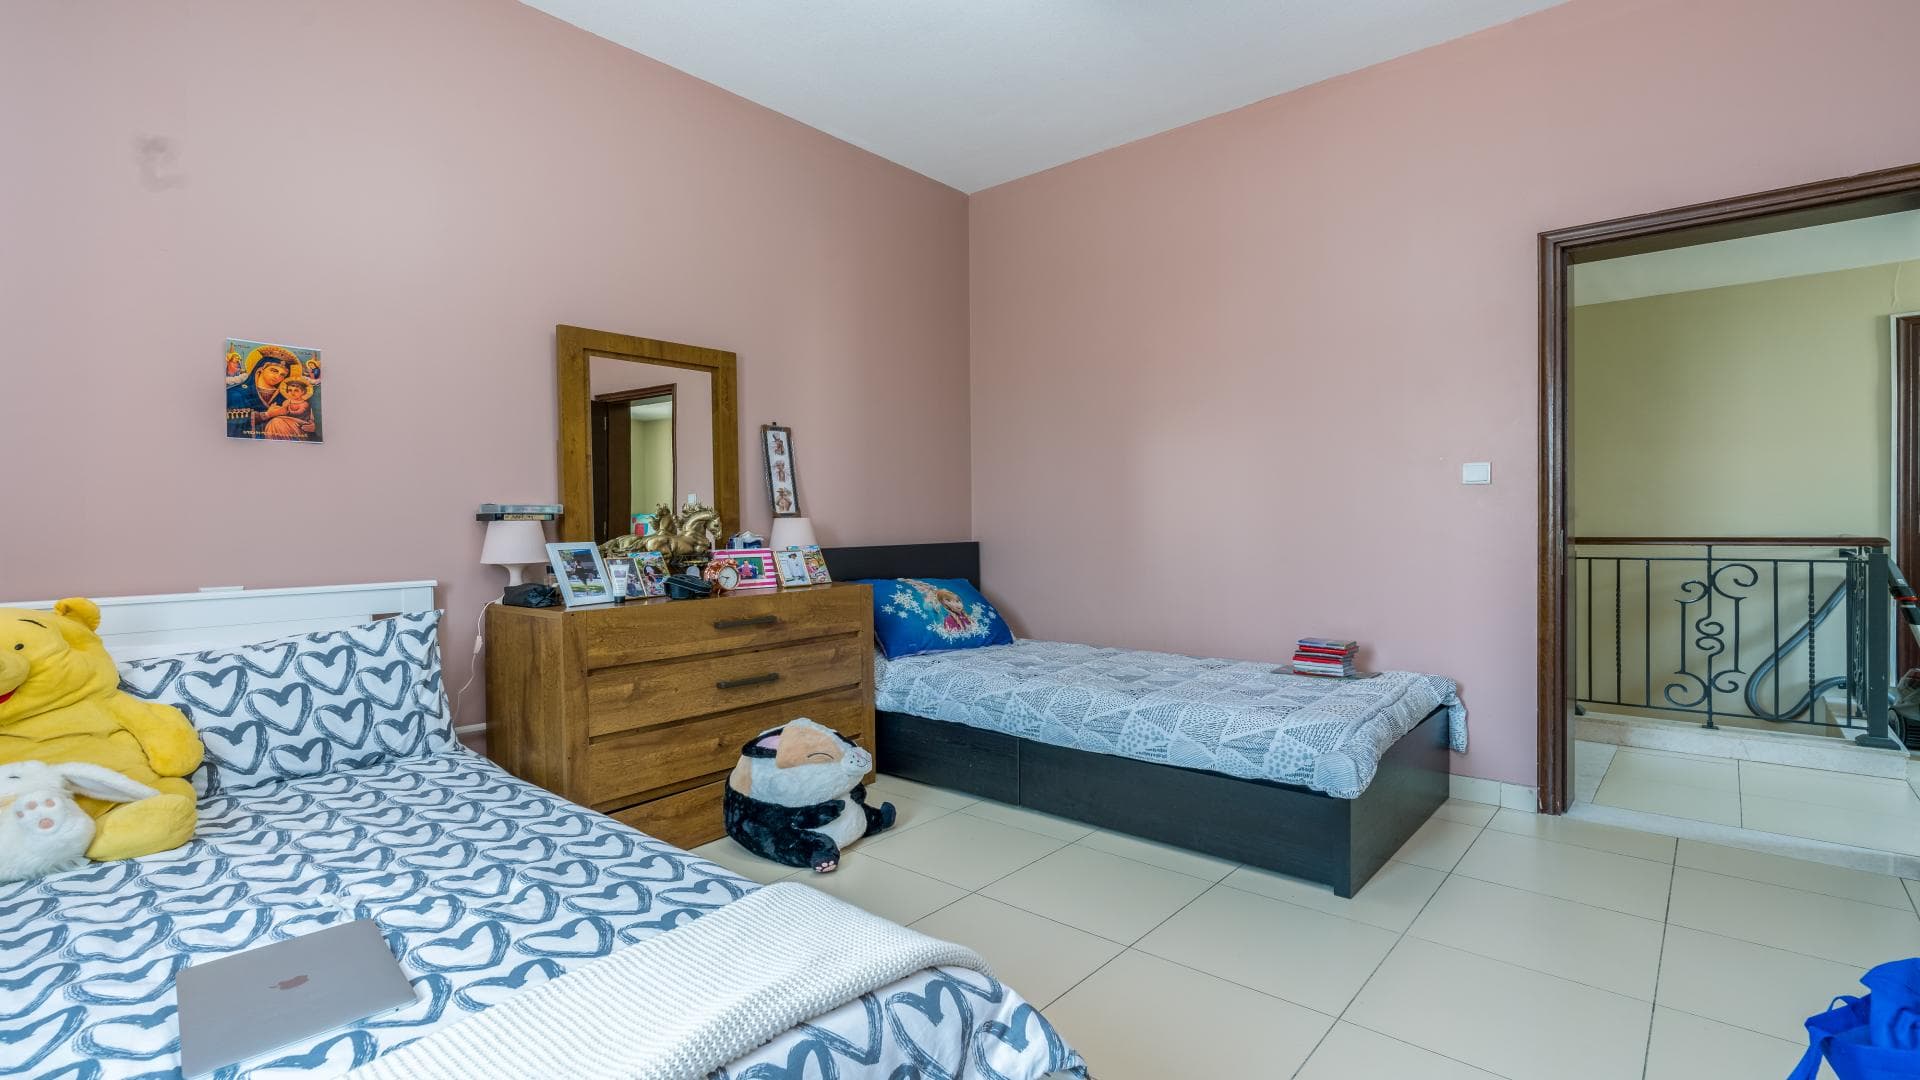 4 Bedroom Villa For Rent Mira Lp36519 A8e5fb783e57100.jpg